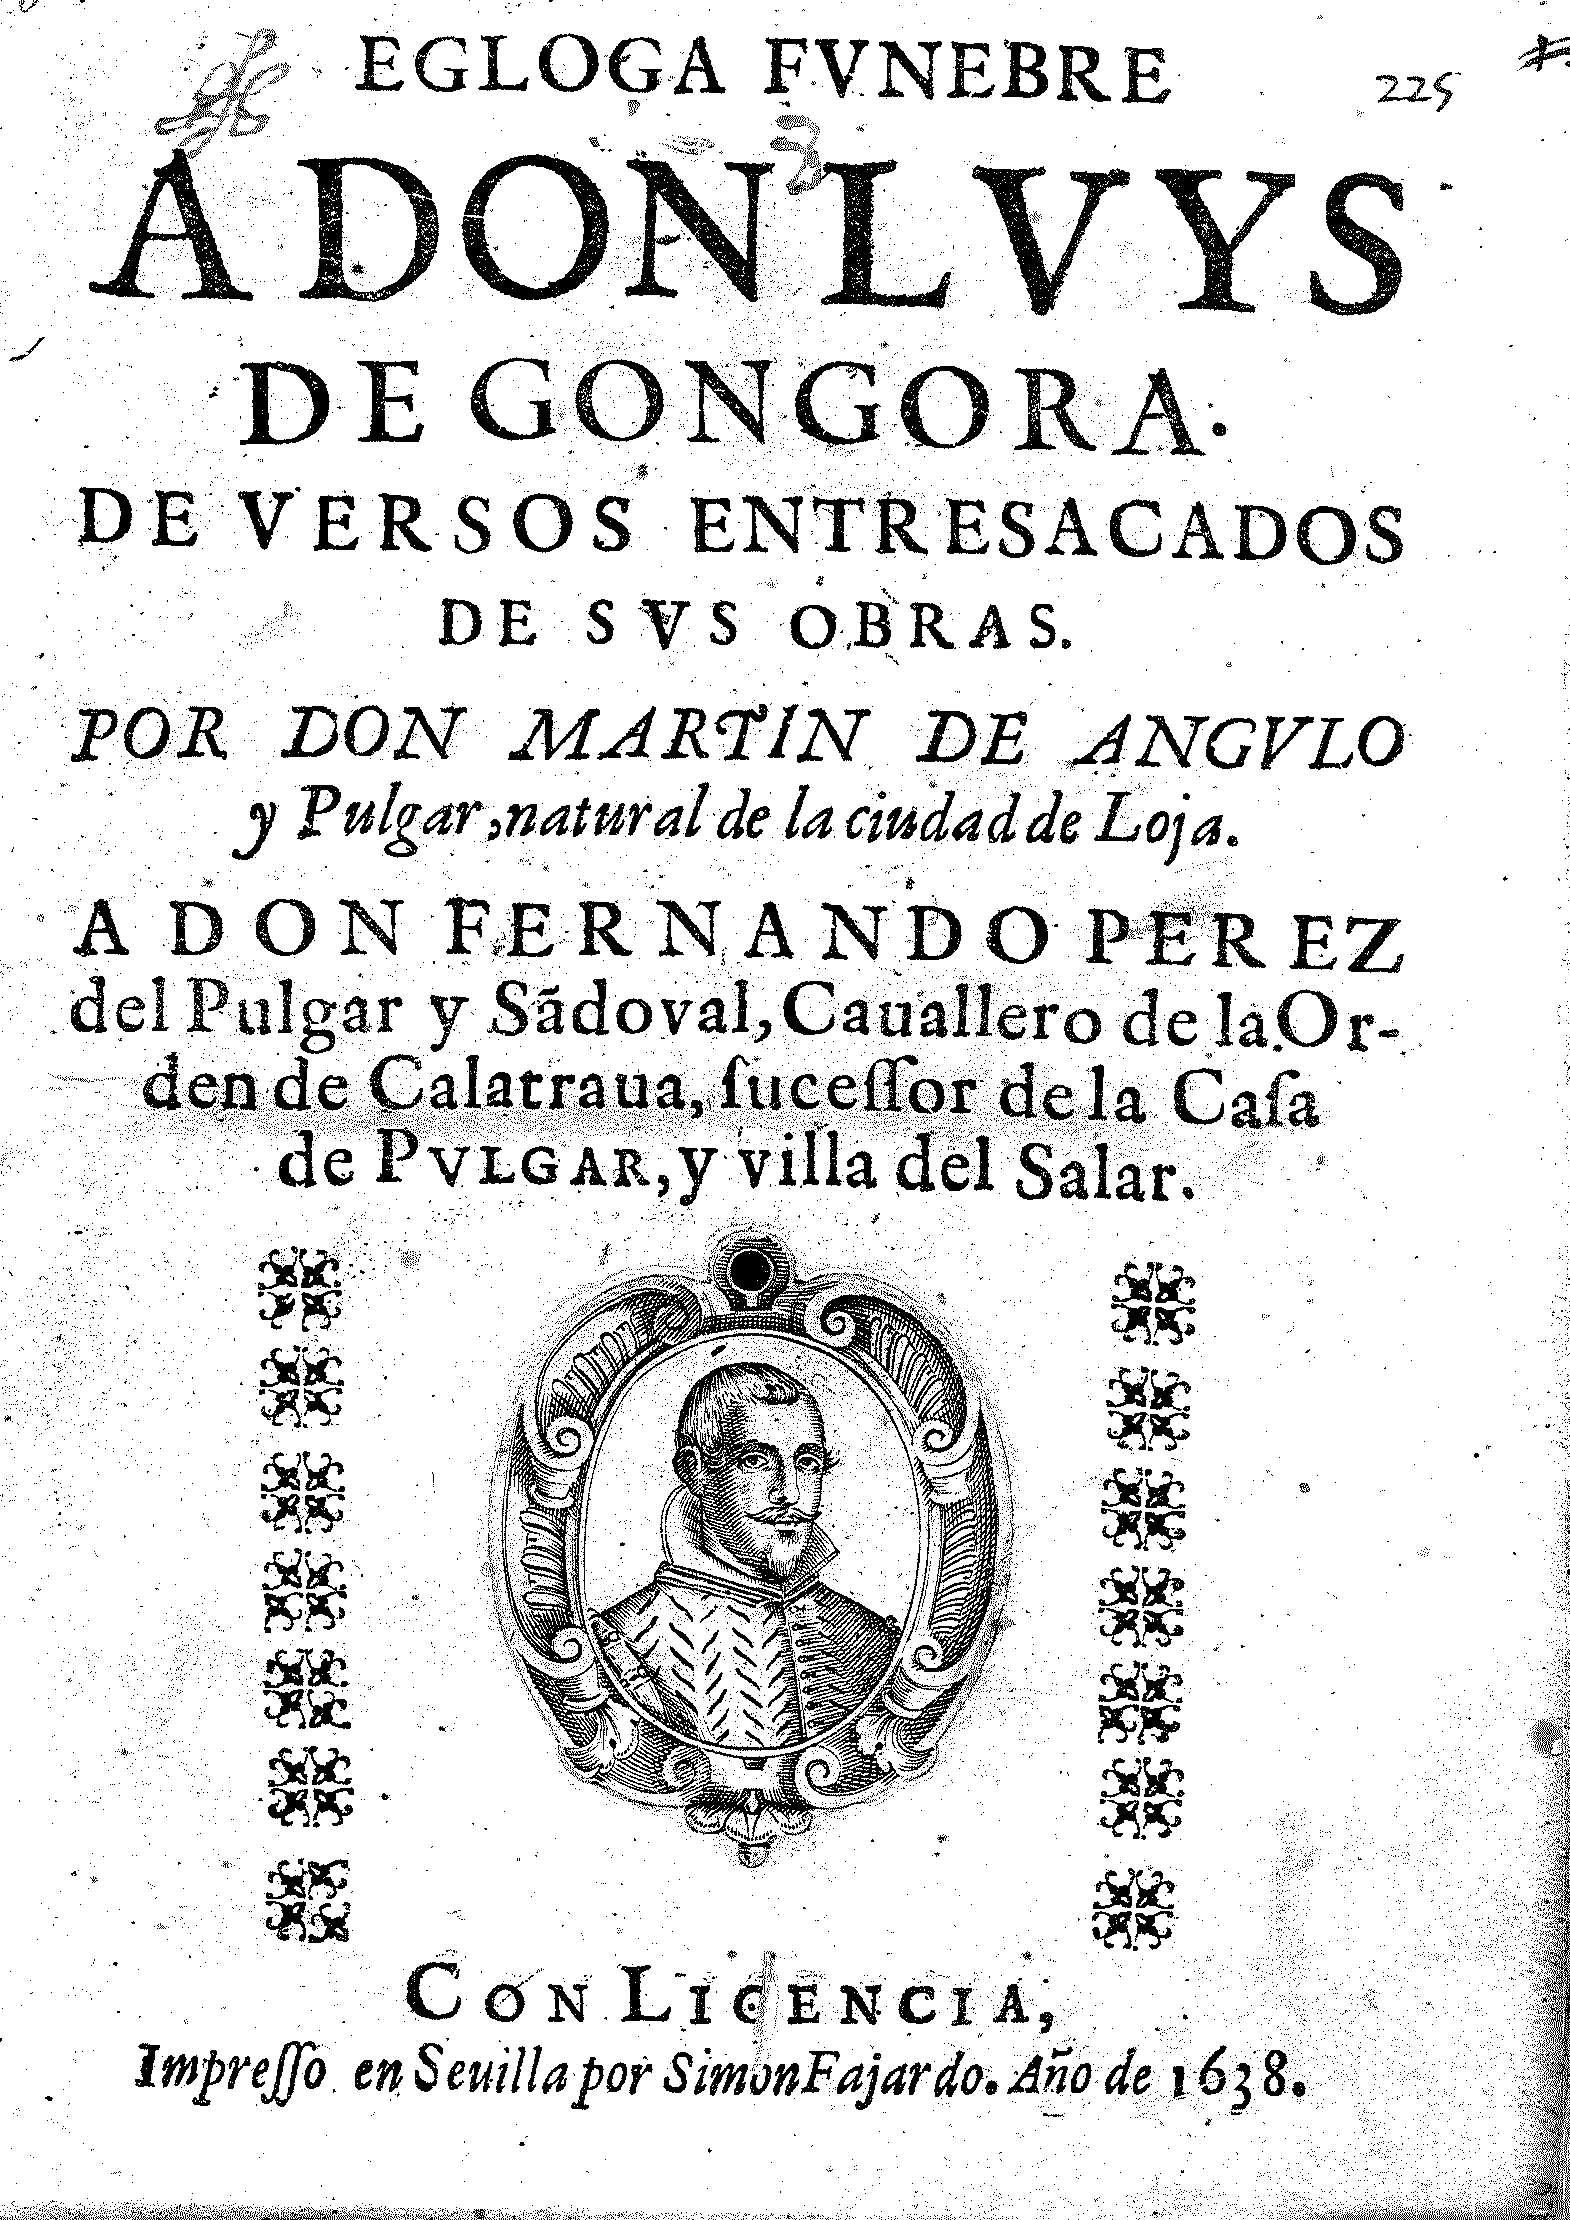 Egloga funebre a Don Luys de Gongora de versos entresacados de sus obras. Por Don Martin de Angulo y Pulgar, natural de la ciudad de Loja.